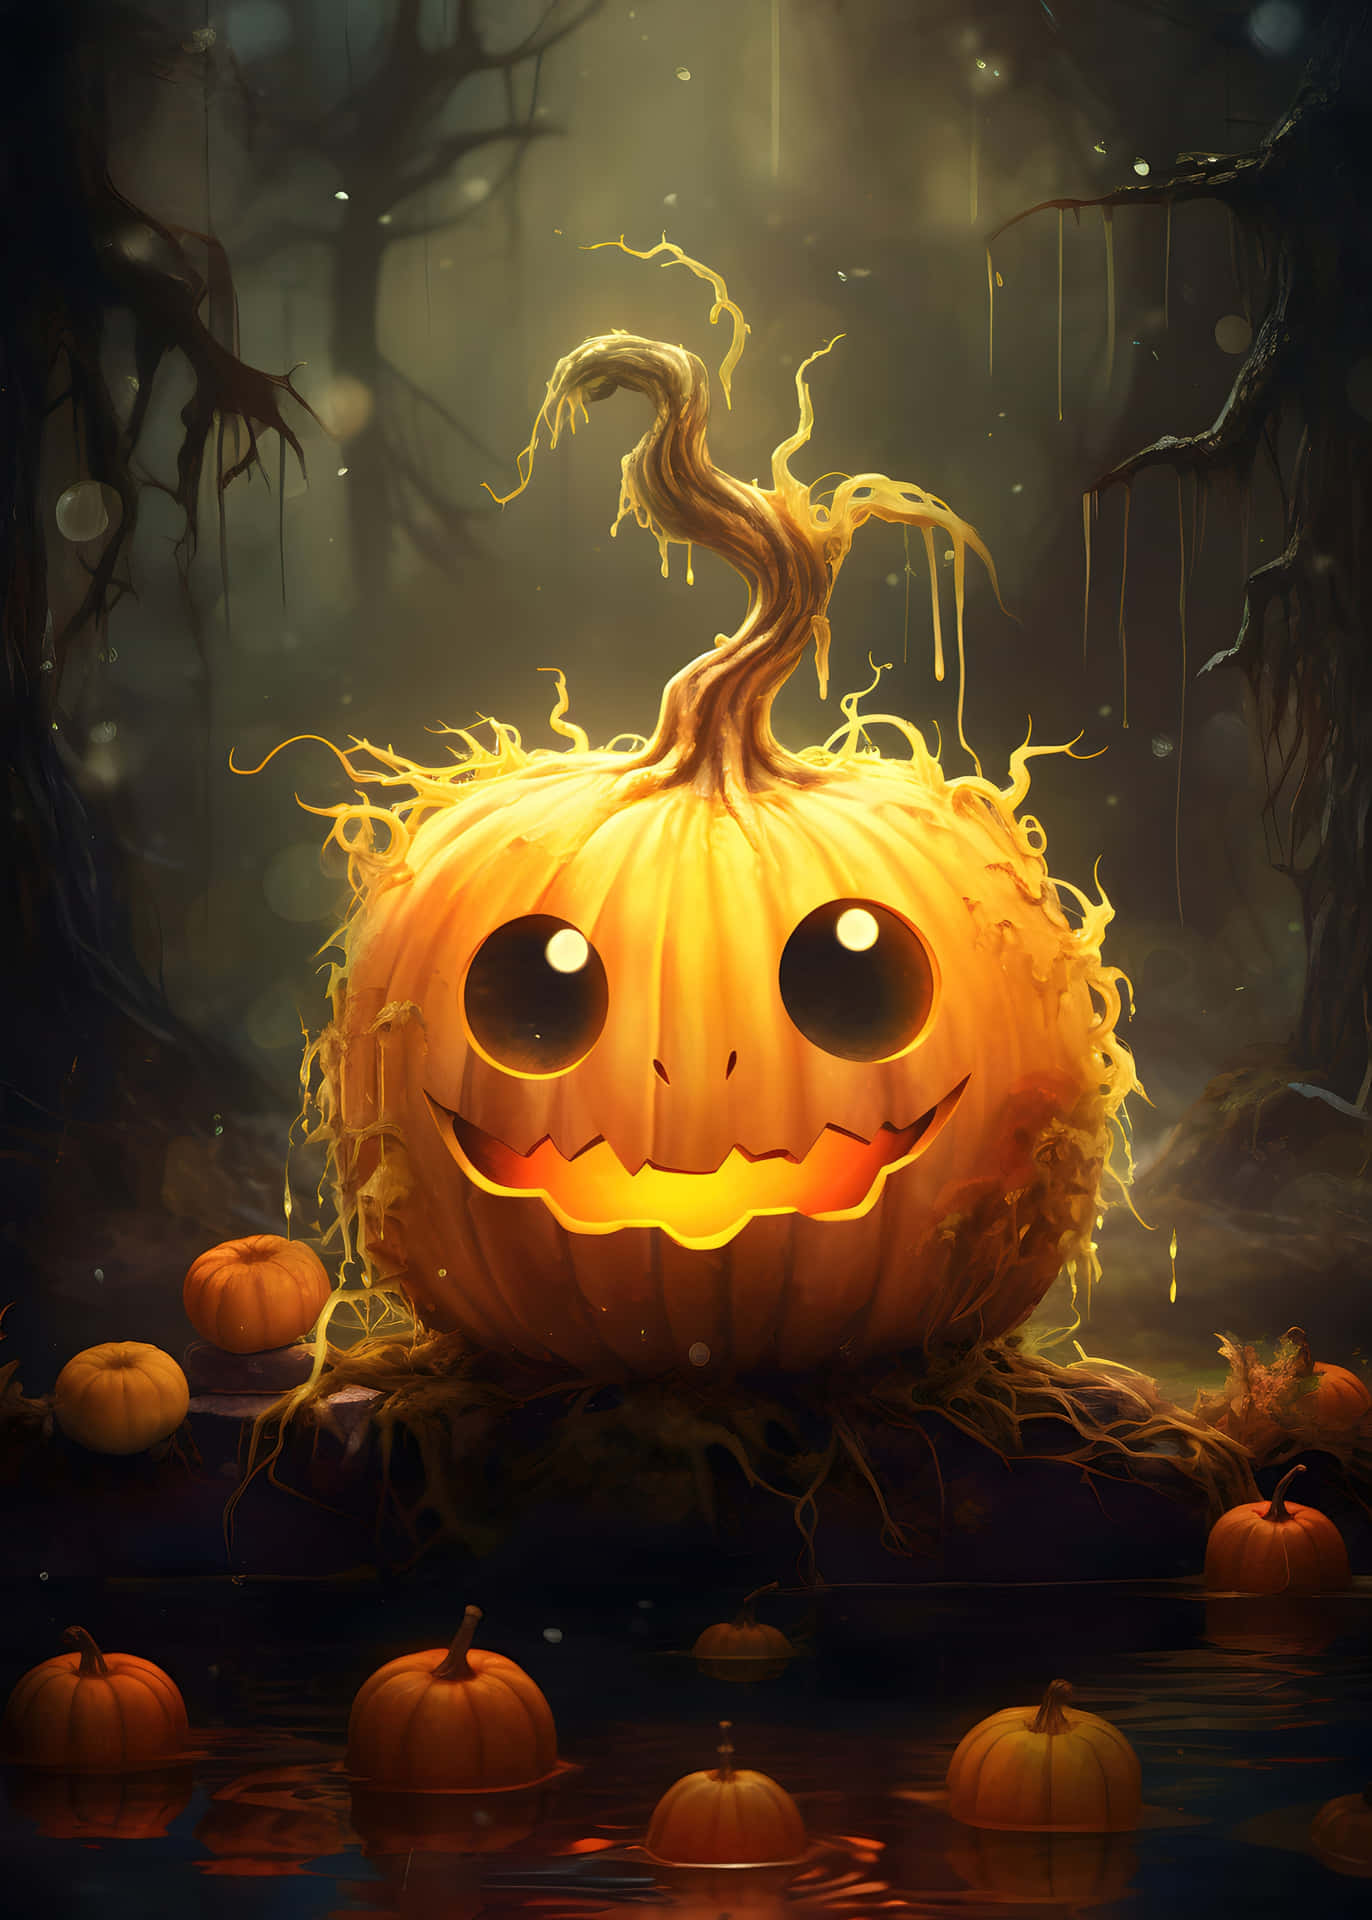 Enchanted Halloween Pumpkin Forest Lockscreen.jpg Wallpaper